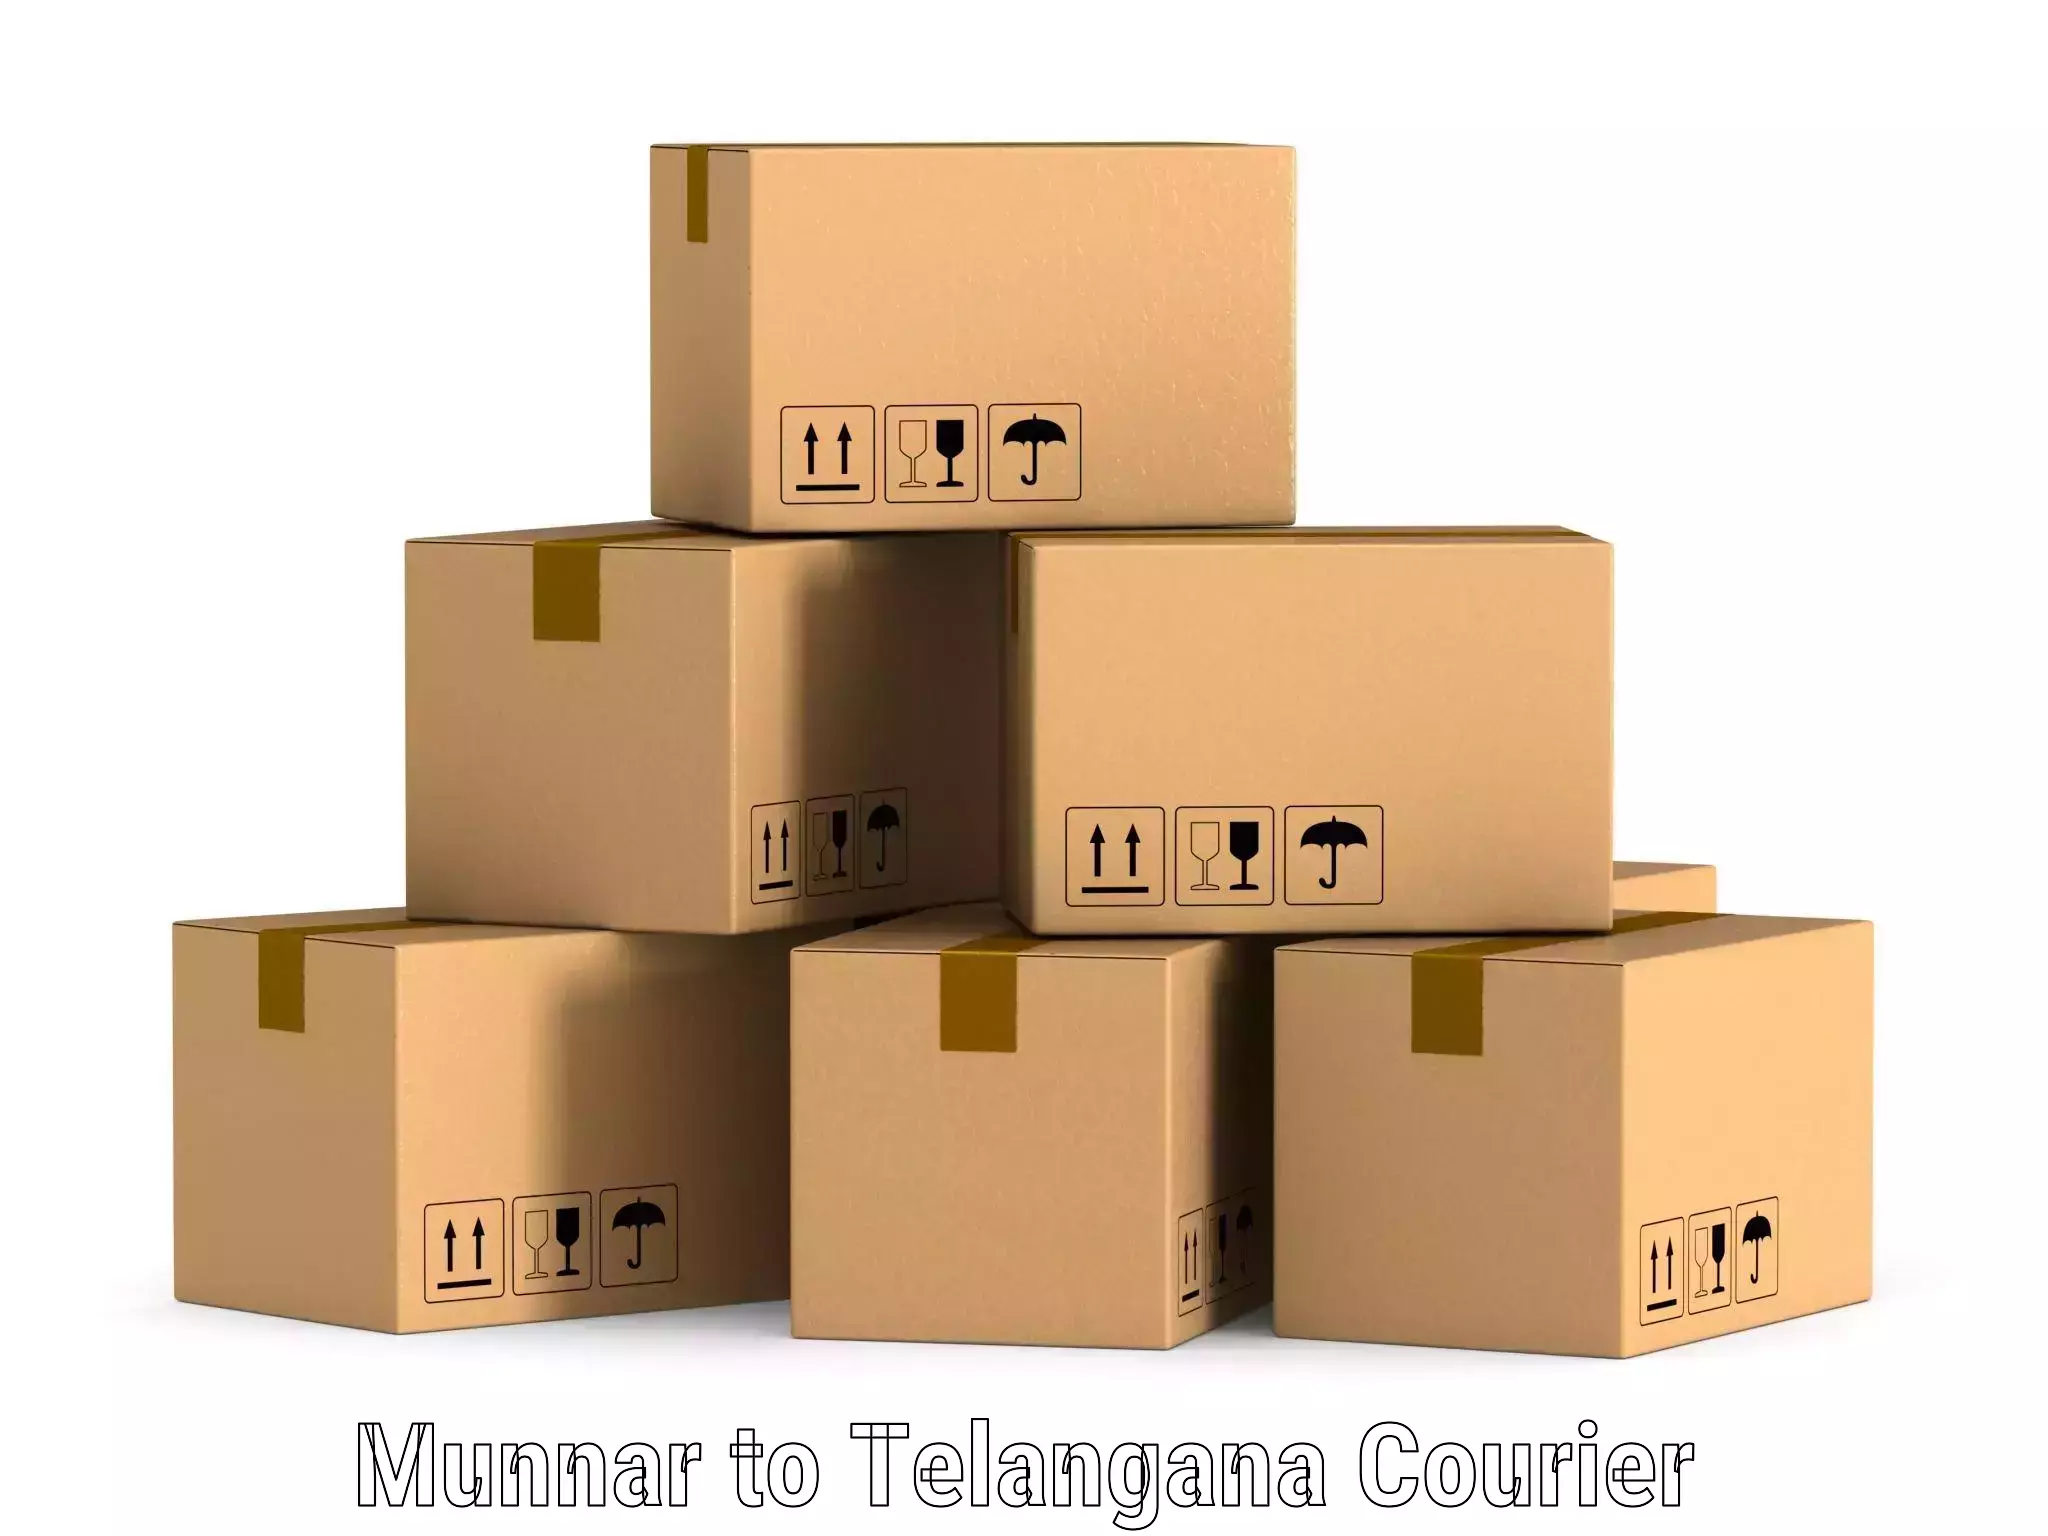 High-capacity shipping options Munnar to Narsampet